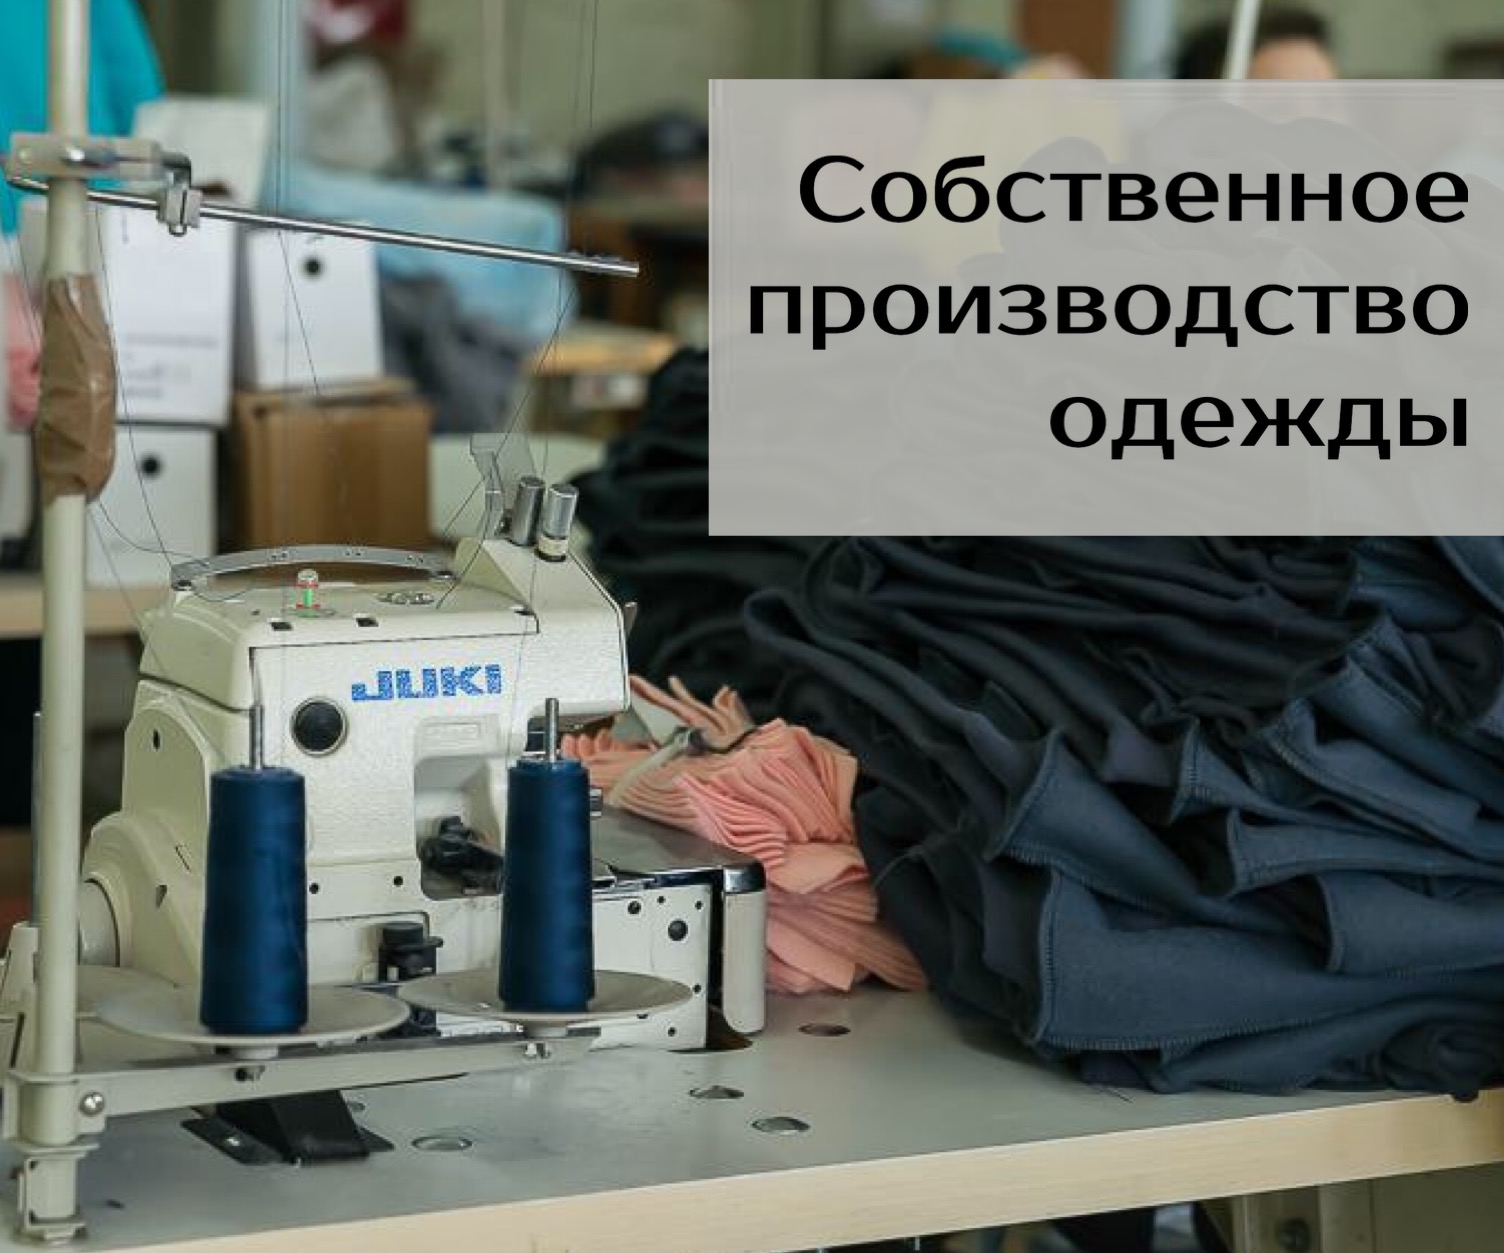 Собственное производство одежды